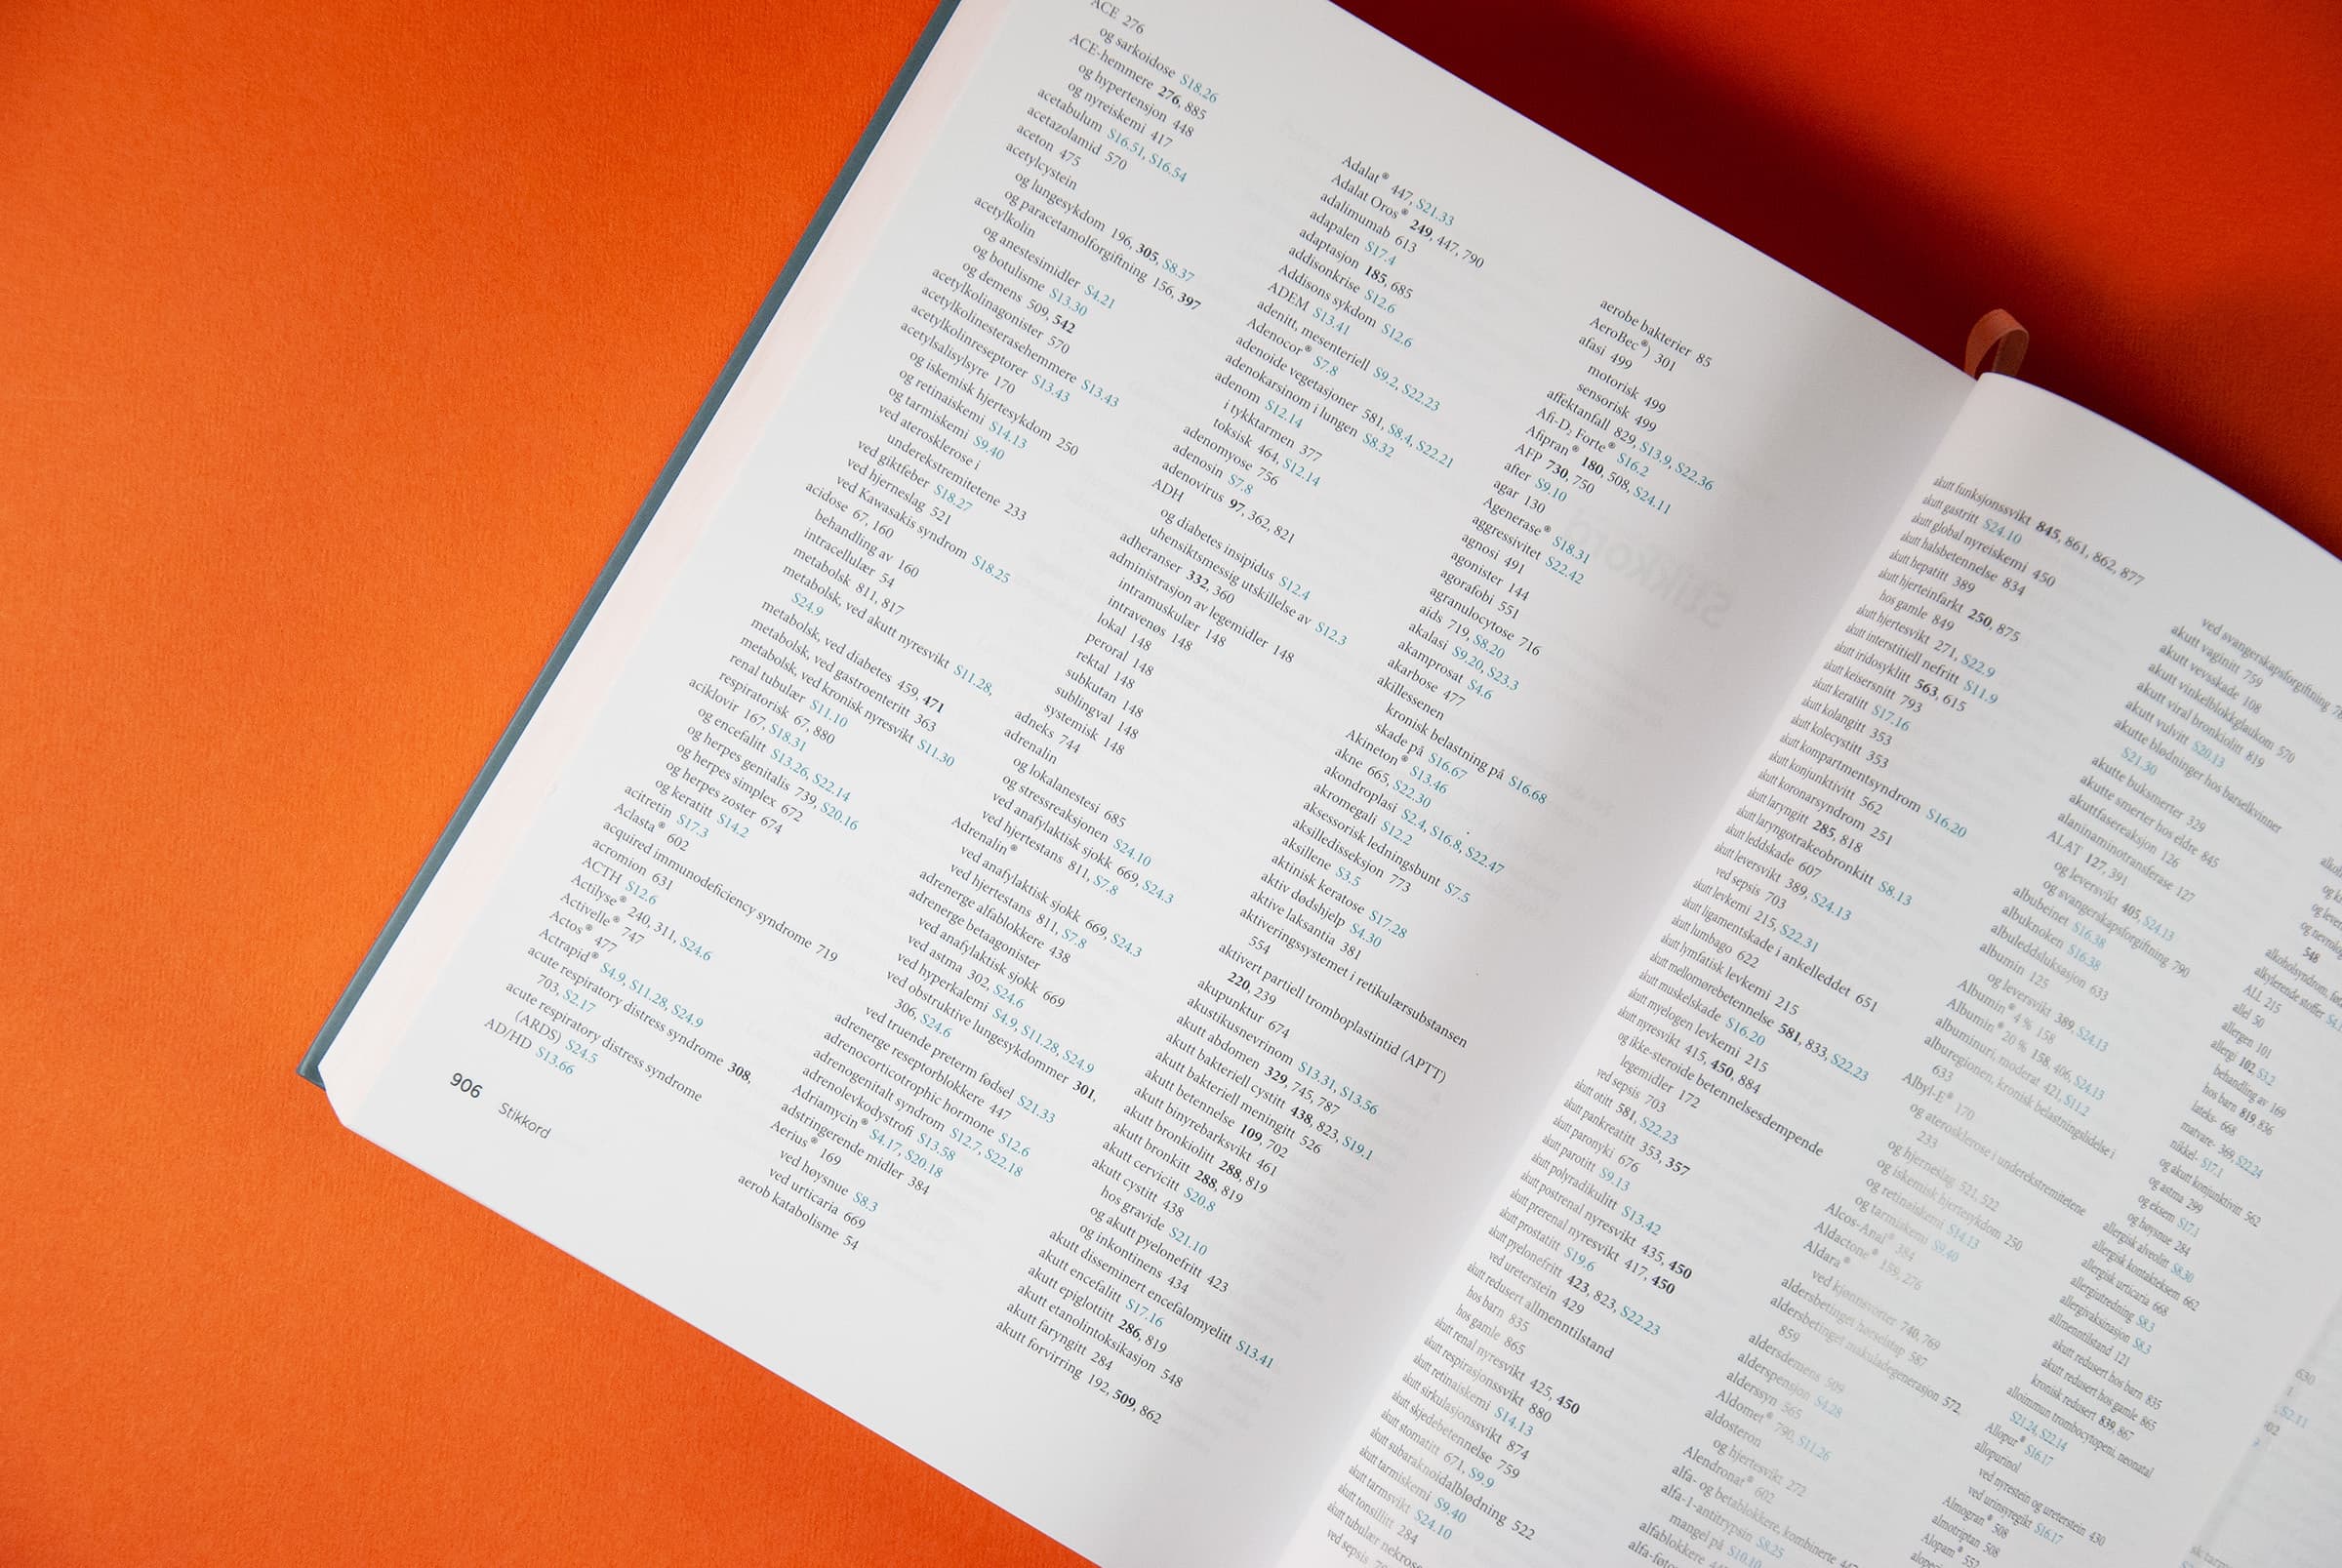 Bildet viser et utsnitt av stikkordsregisteret i boka. Det er 3 spalter med liten tekst. Noen sidetall er i fet, mens andre er blå.